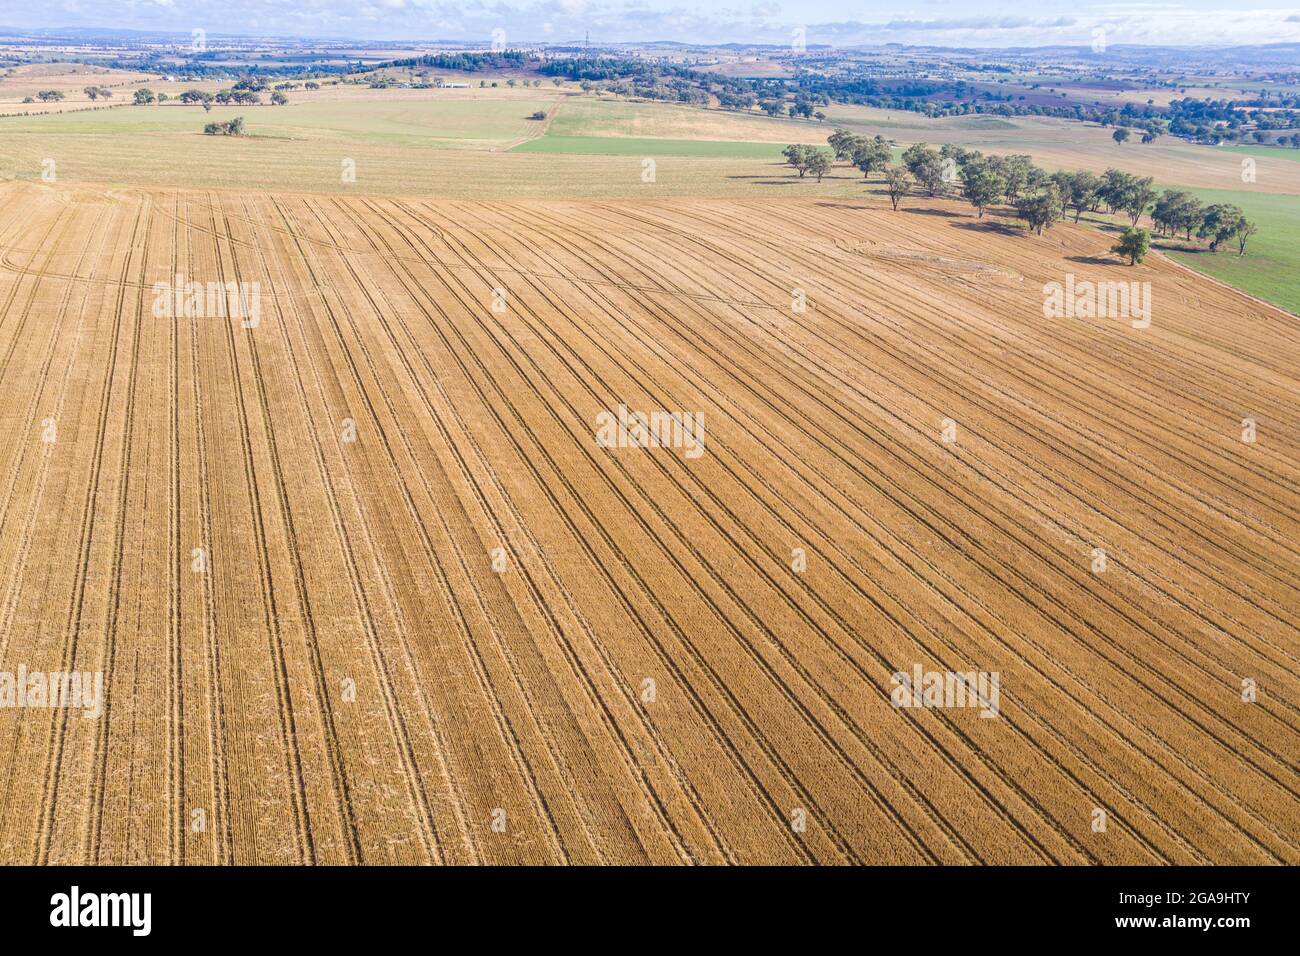 Une vue aérienne des terres agricoles récemment cultivées dans la région centrale de Nouvelle-Galles du Sud, nouveau Cowra et Canonwindra - Nouvelle-Galles du Sud Australie Banque D'Images